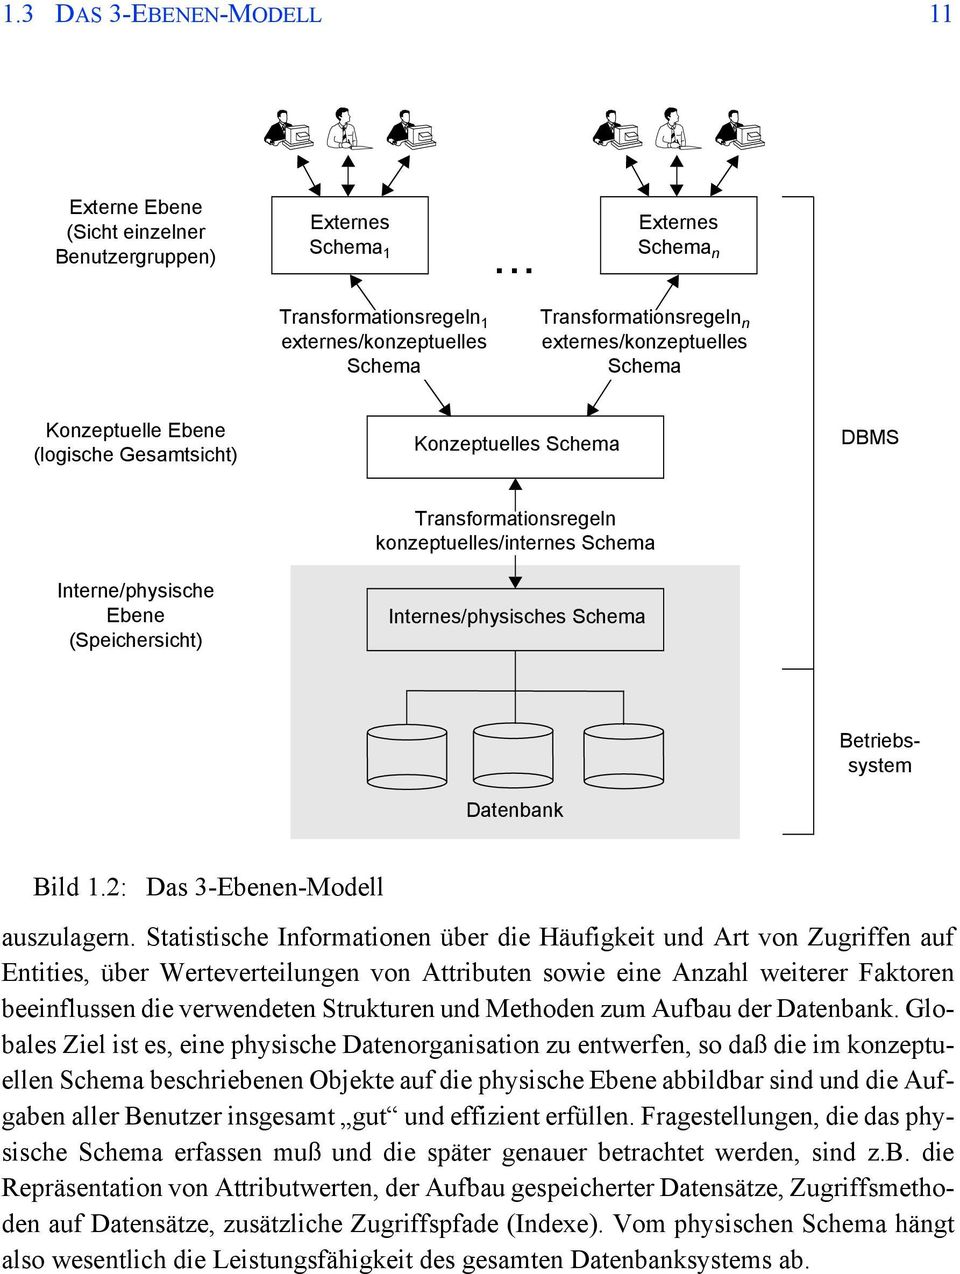 Interne/physische Ebene (Speichersicht) Transformationsregeln konzeptuelles/internes Schema Internes/physisches Schema Datenbank Betriebssystem Bild 1.2: Das 3-Ebenen-Modell auszulagern.